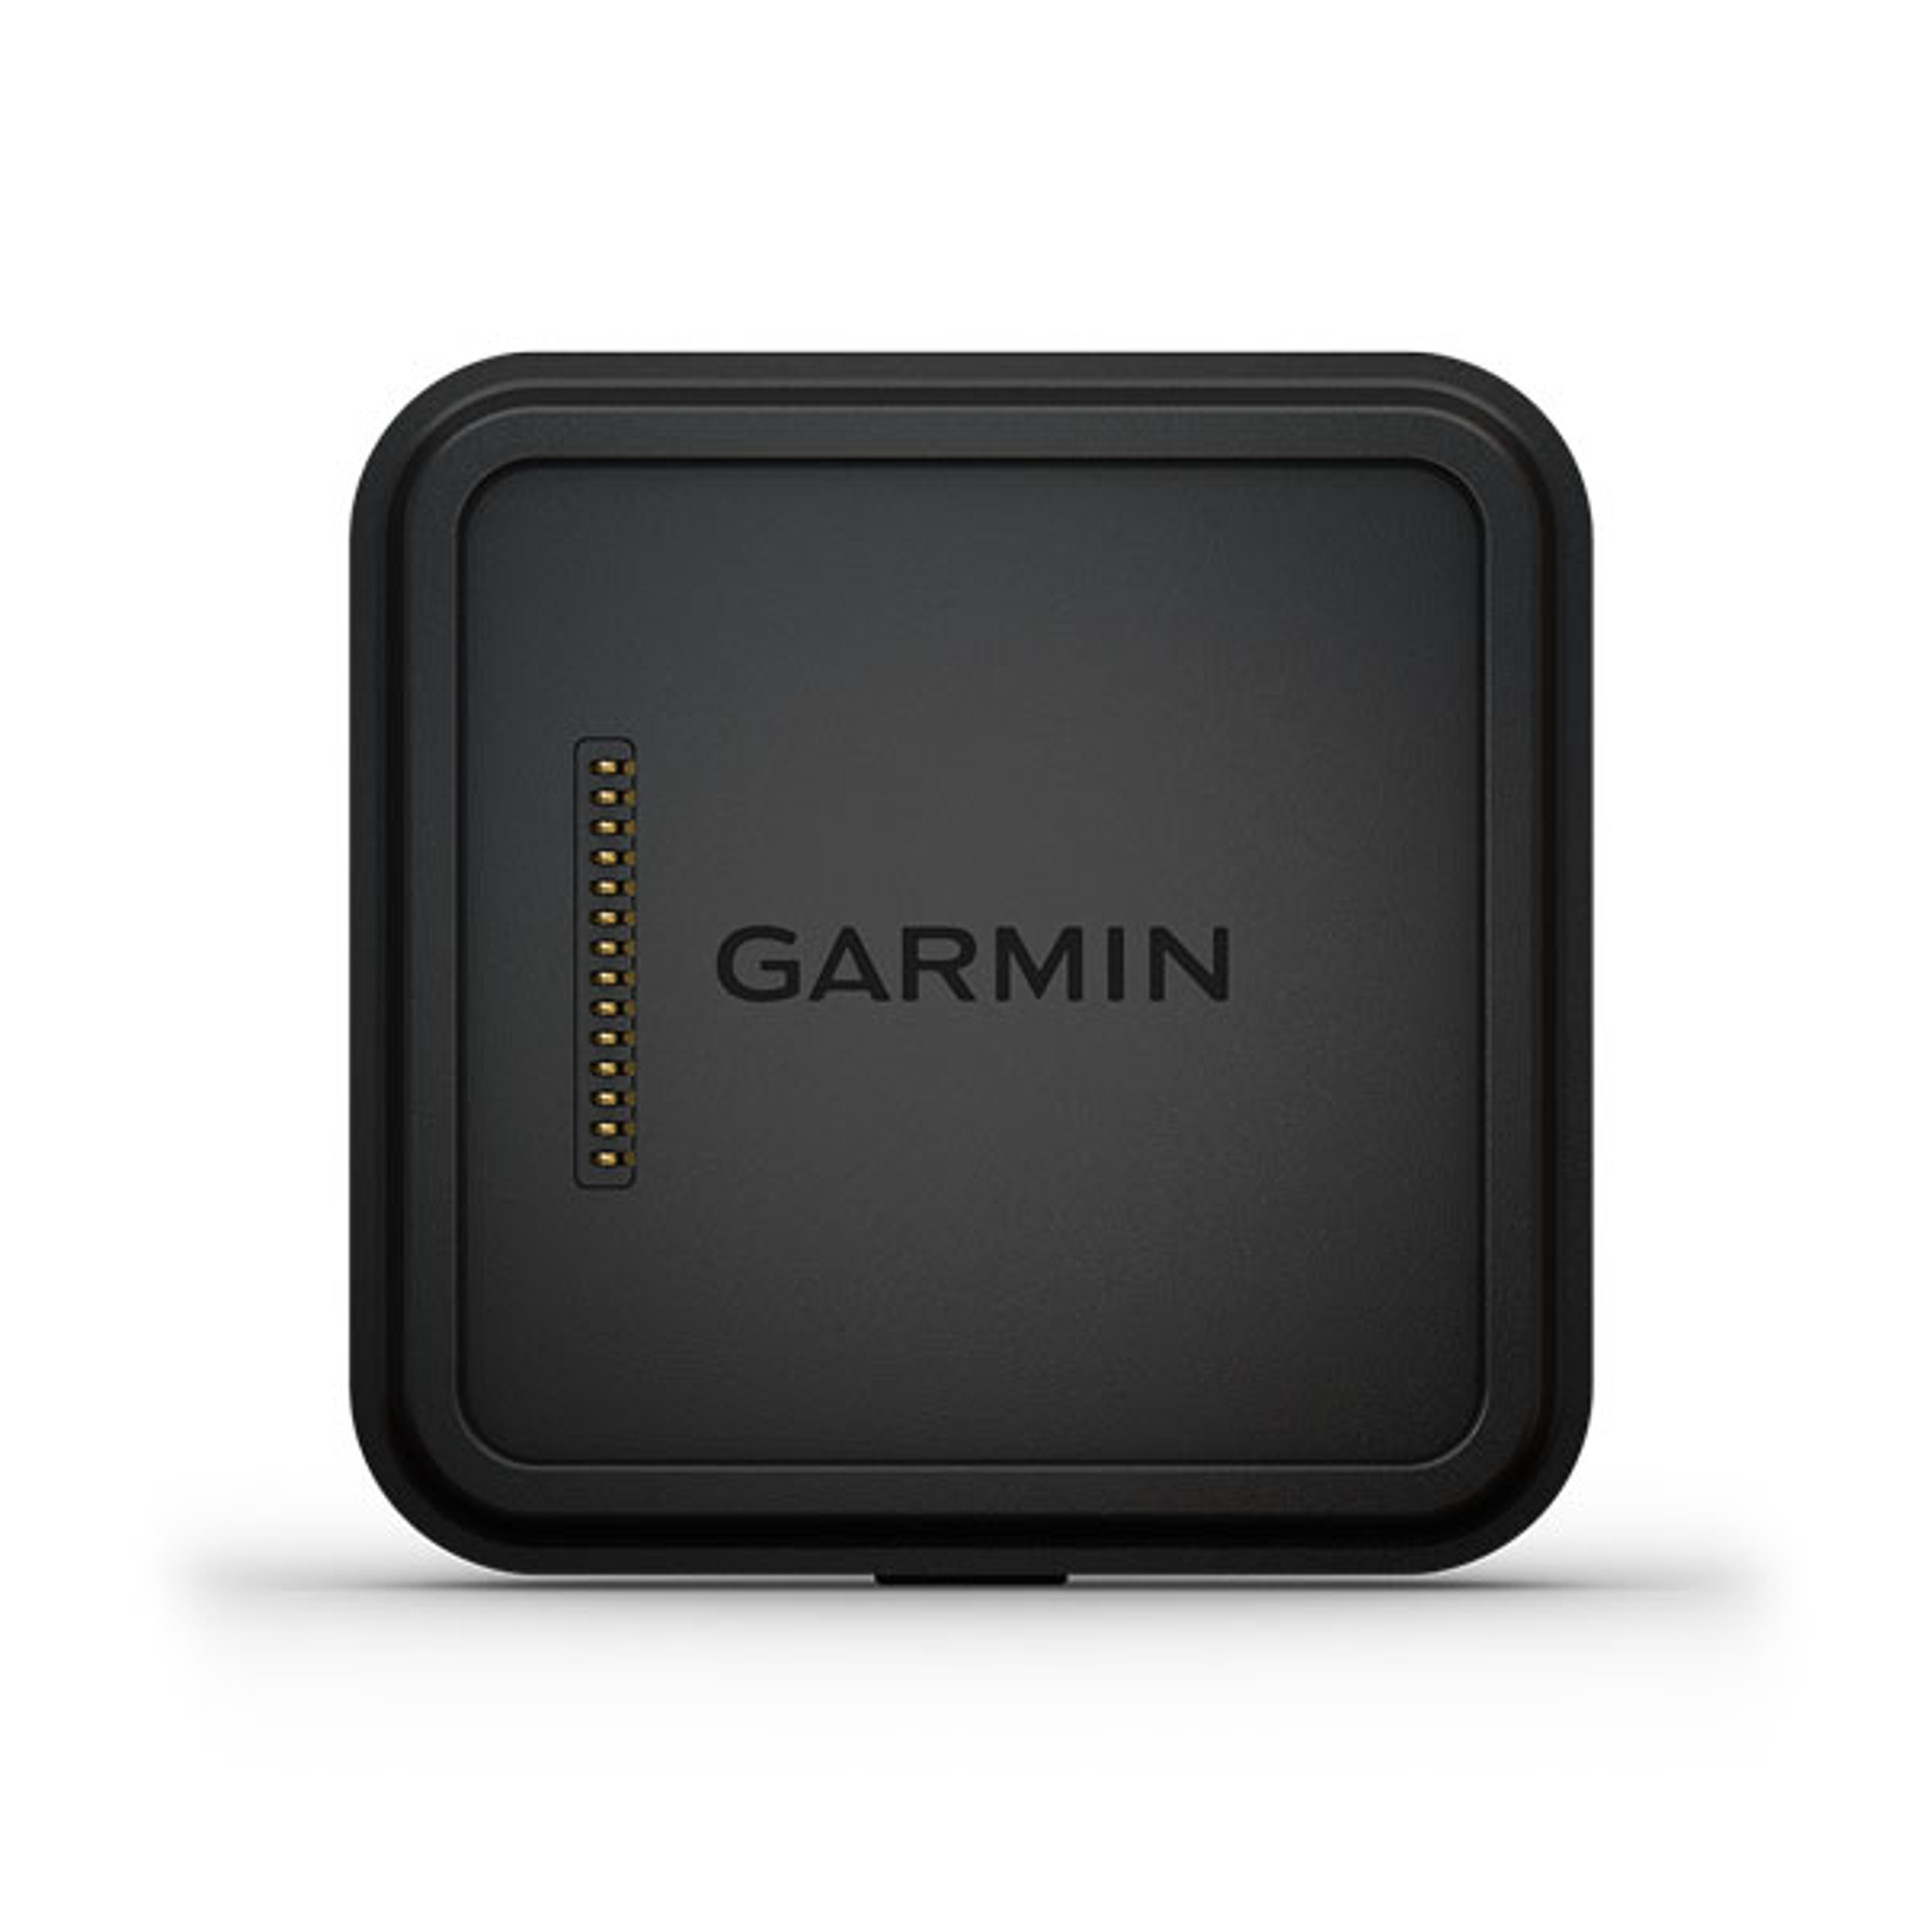 Mnt:Garmin powered mnt Dezl800/1000 w AV